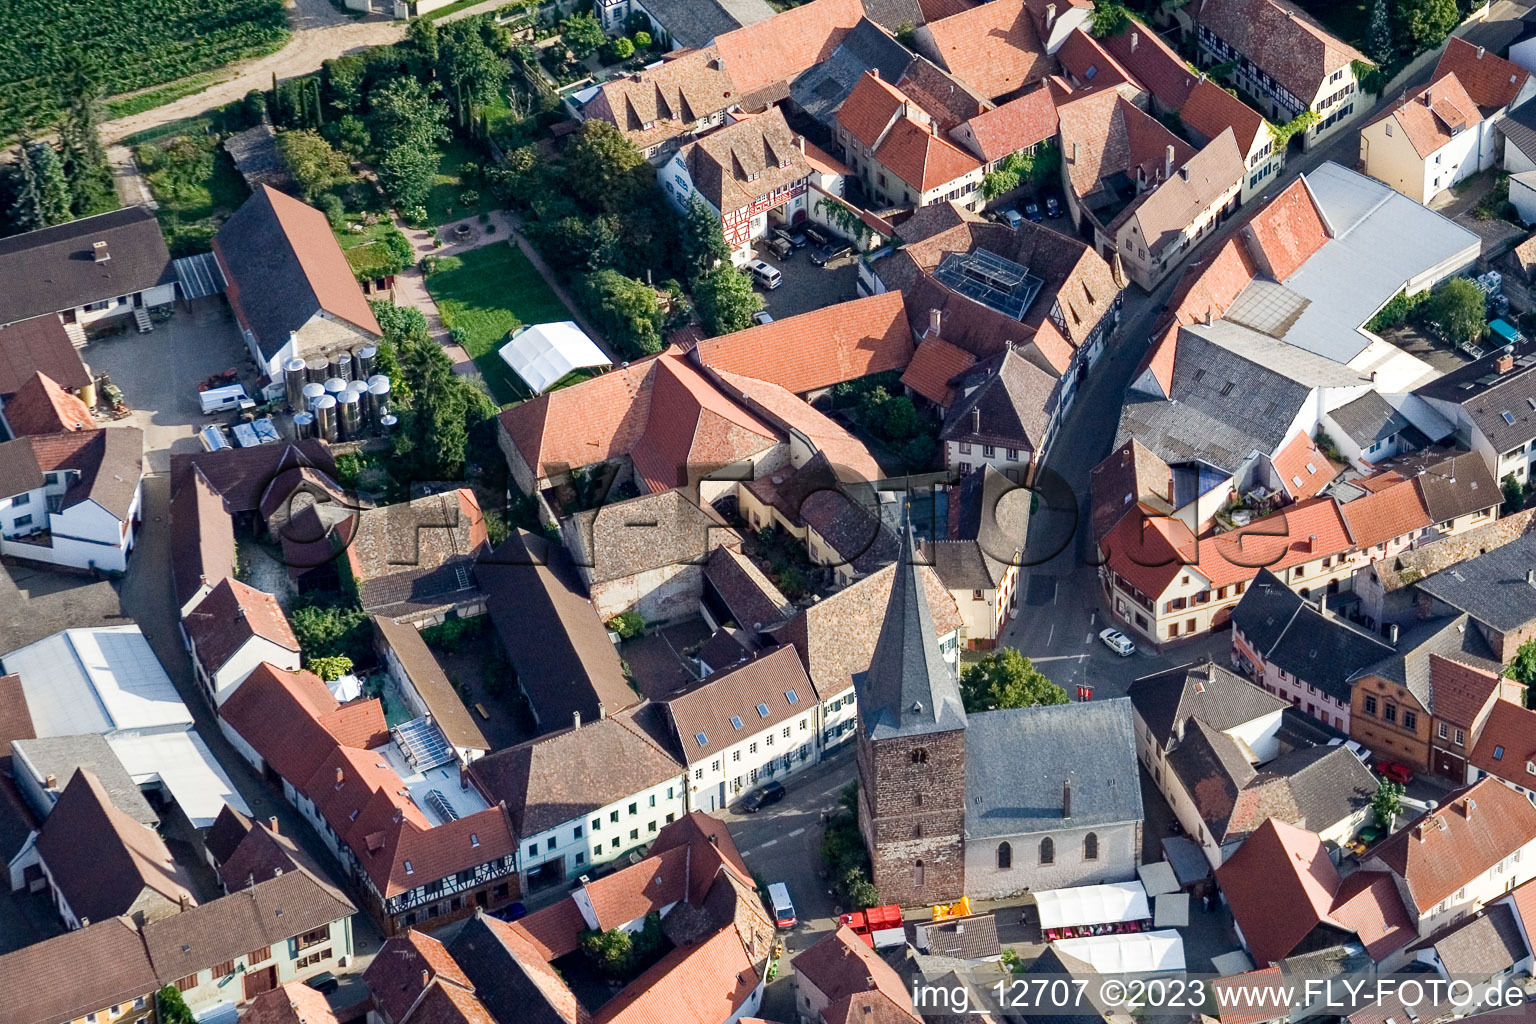 Großkarlbach im Bundesland Rheinland-Pfalz, Deutschland aus der Luft betrachtet